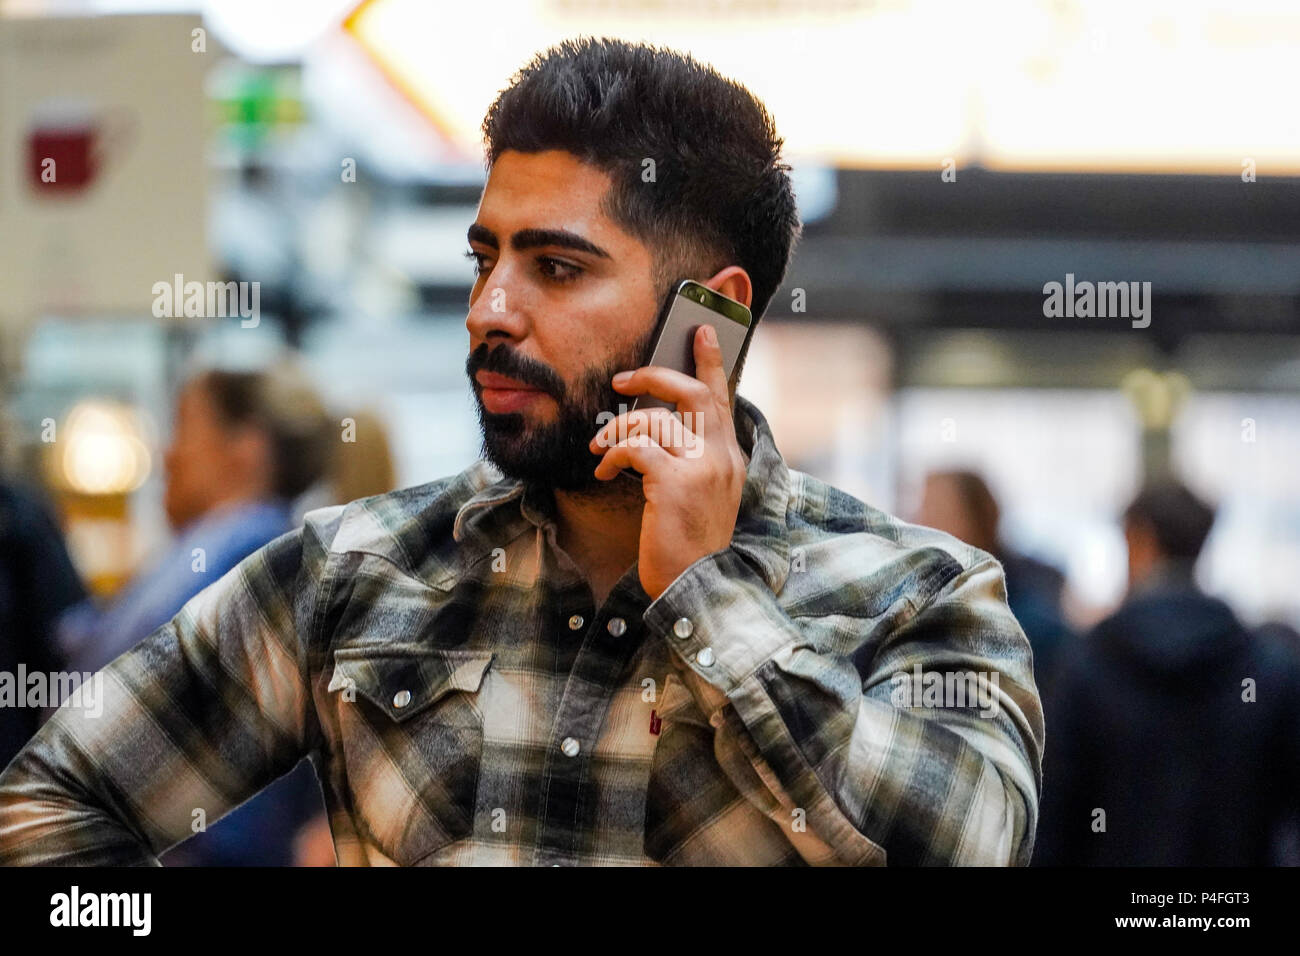 Grand homme avec barbe, chemise de bûcheron, en conversation téléphonique mobile Banque D'Images